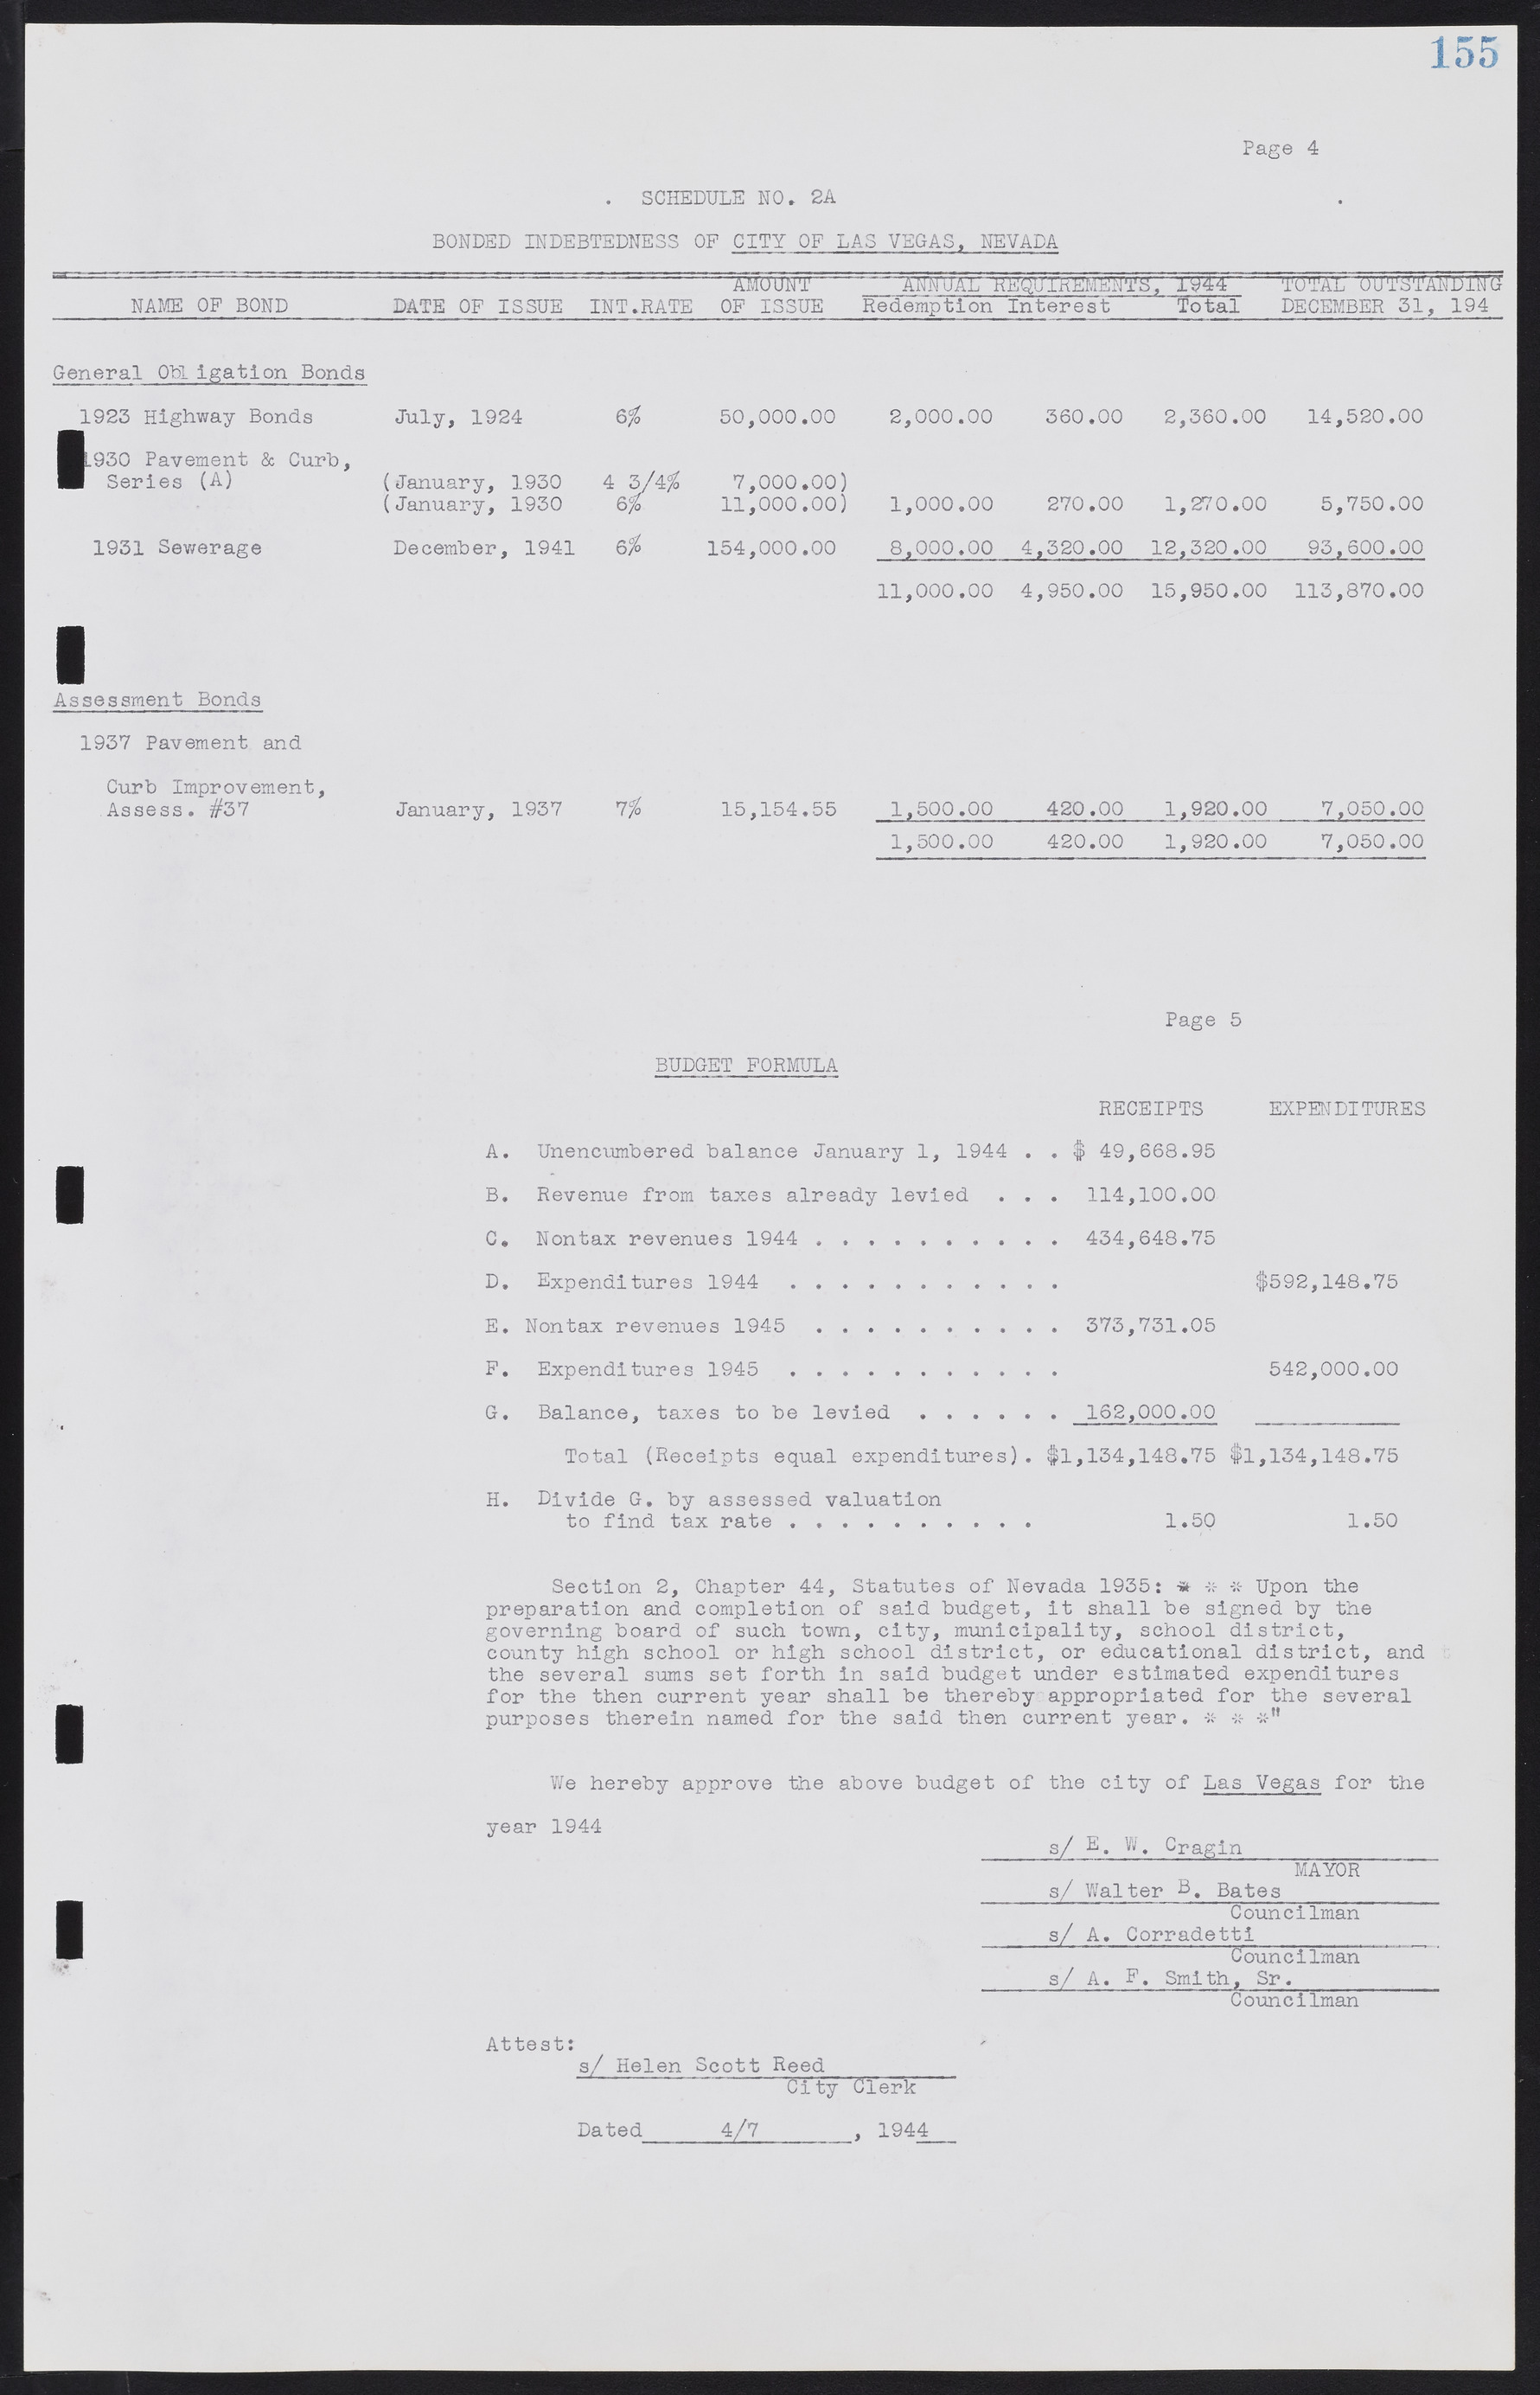 Las Vegas City Commission Minutes, August 11, 1942 to December 30, 1946, lvc000005-172